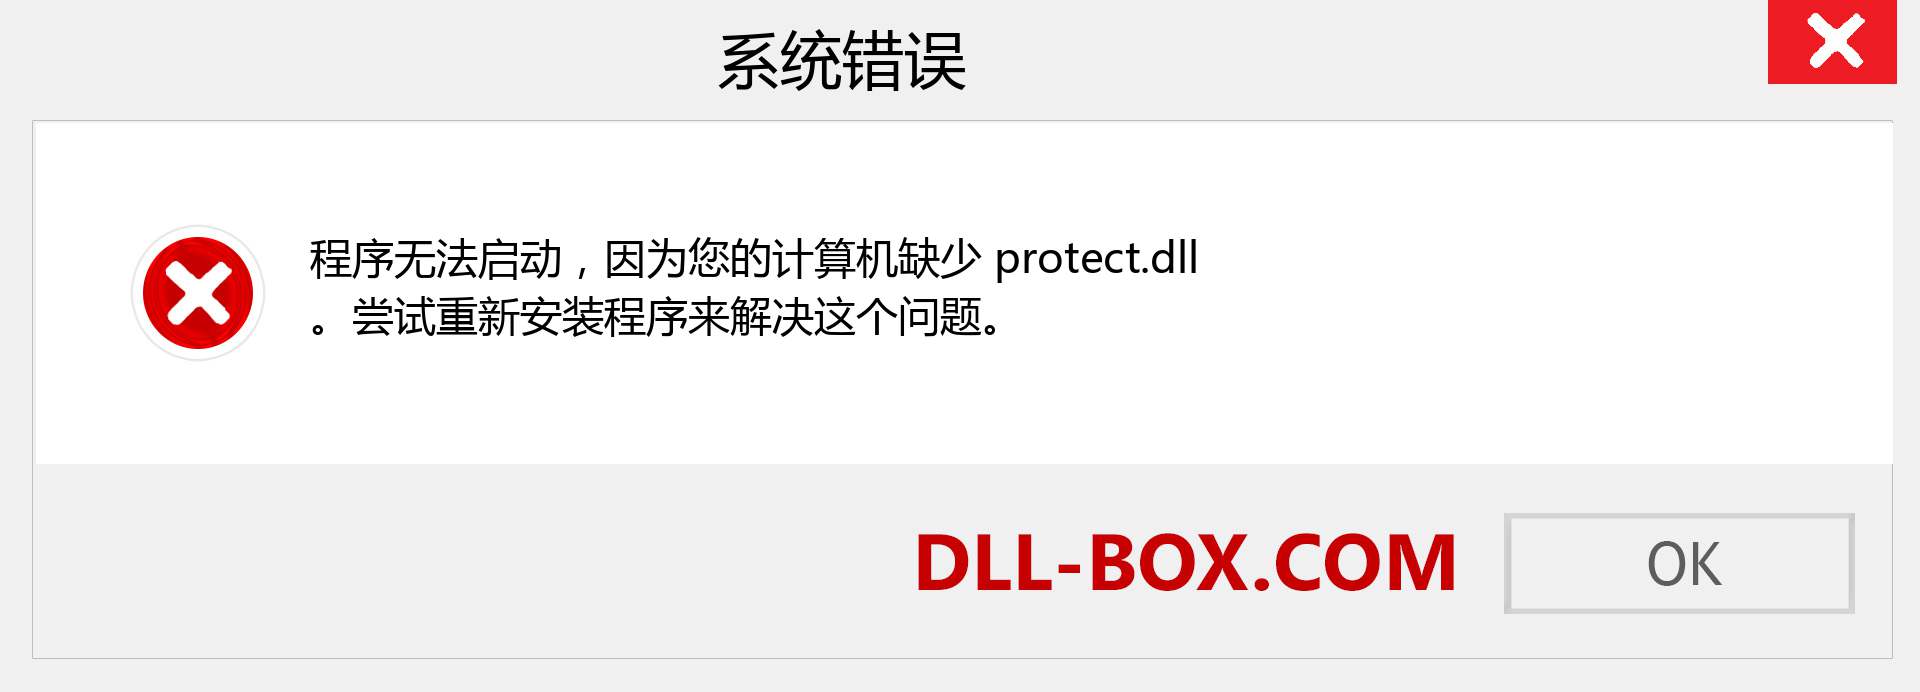 protect.dll 文件丢失？。 适用于 Windows 7、8、10 的下载 - 修复 Windows、照片、图像上的 protect dll 丢失错误